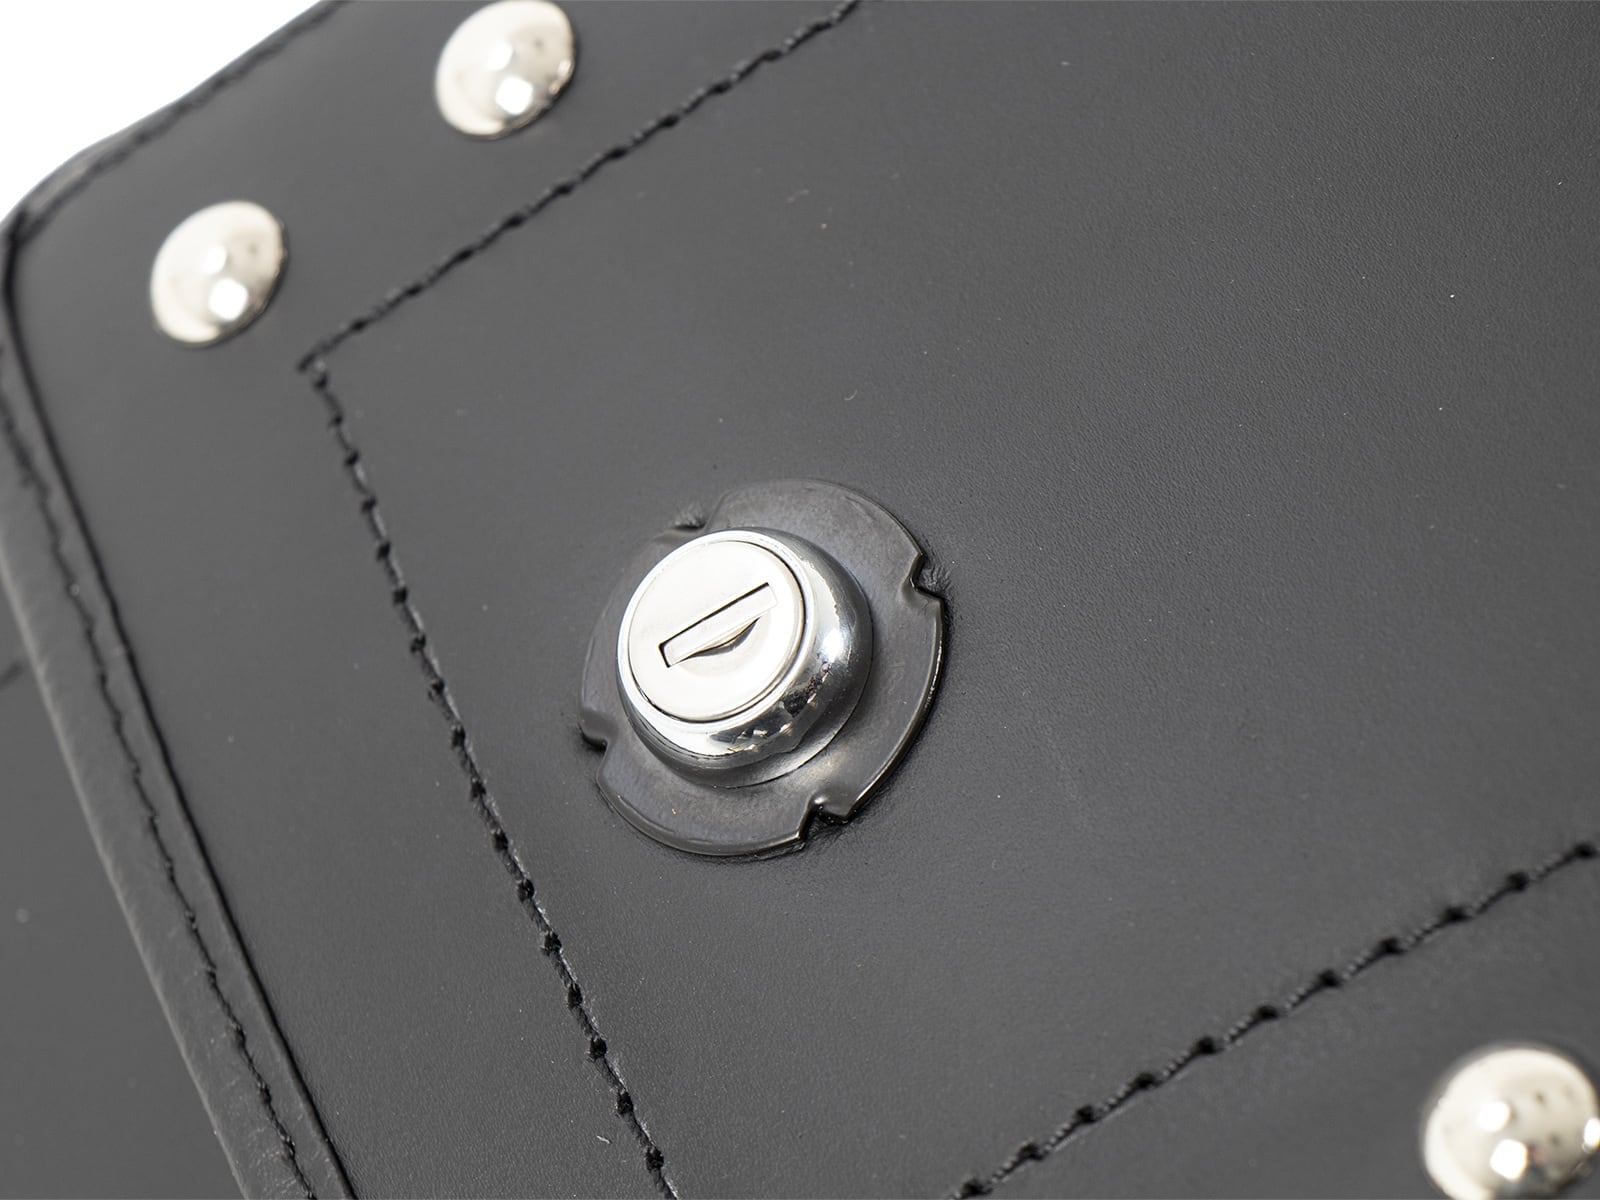 Ivory leather bag set black for C-Bow holder